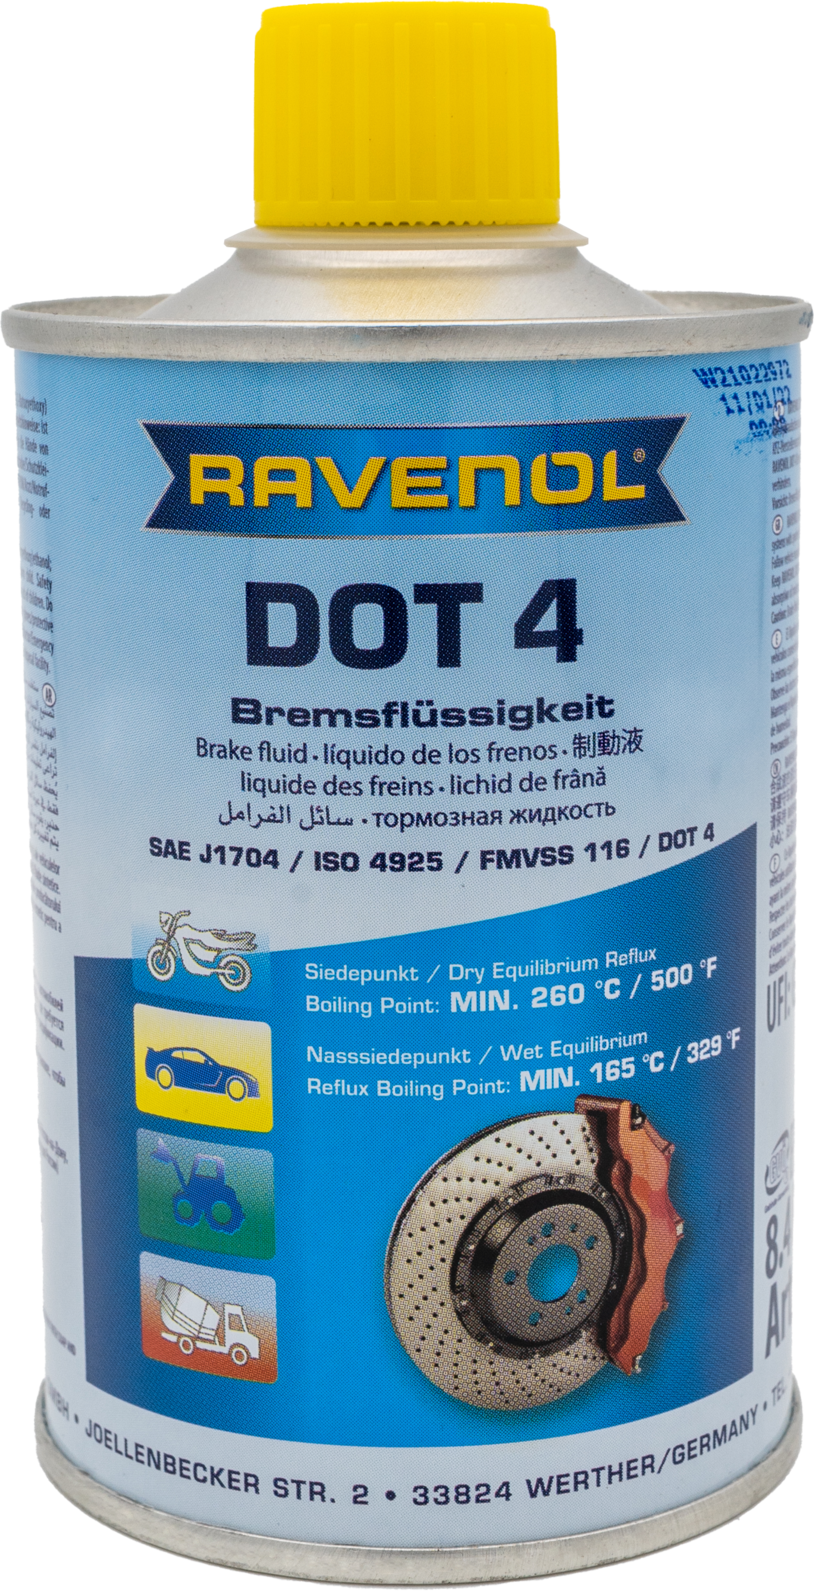 RAVENOL DOT 4